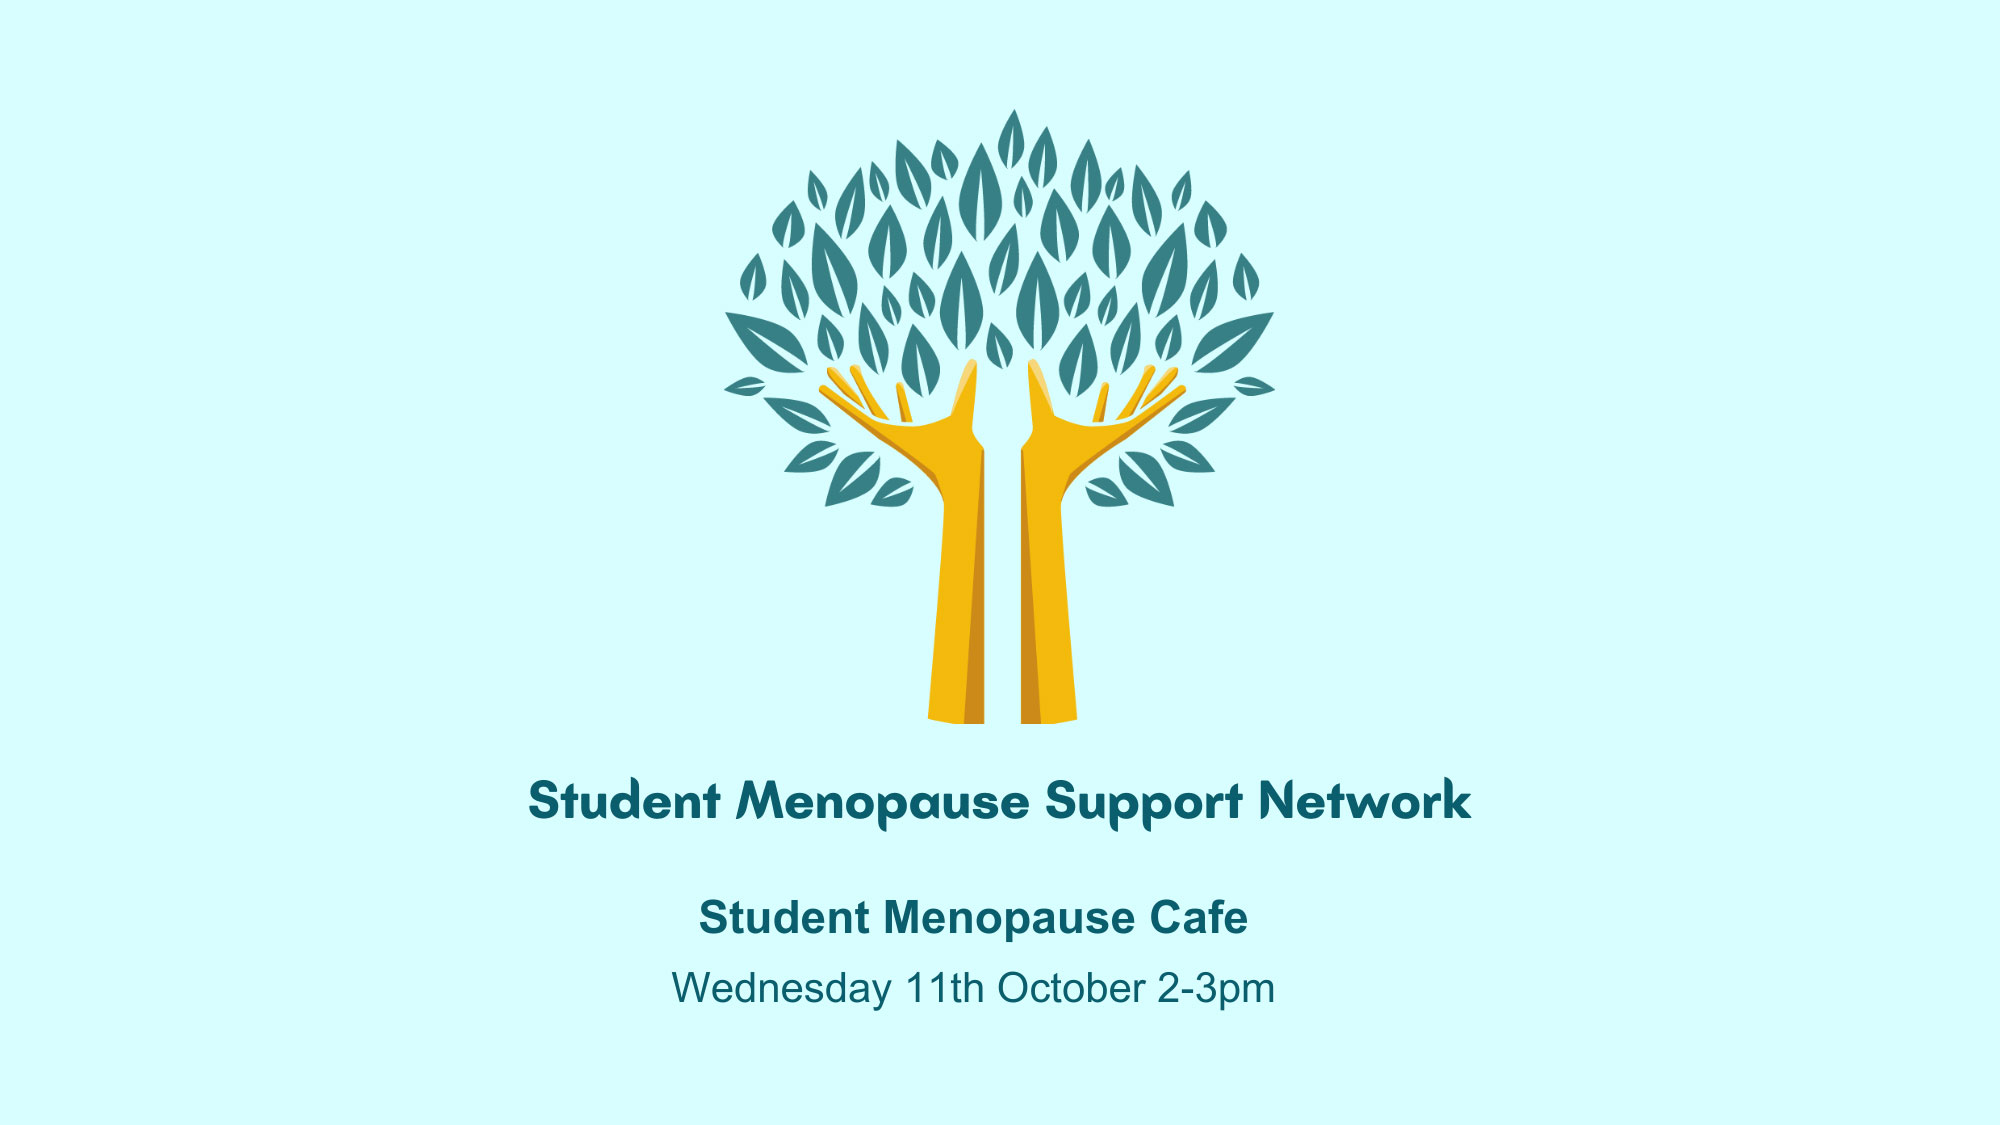 Student Menopause Café